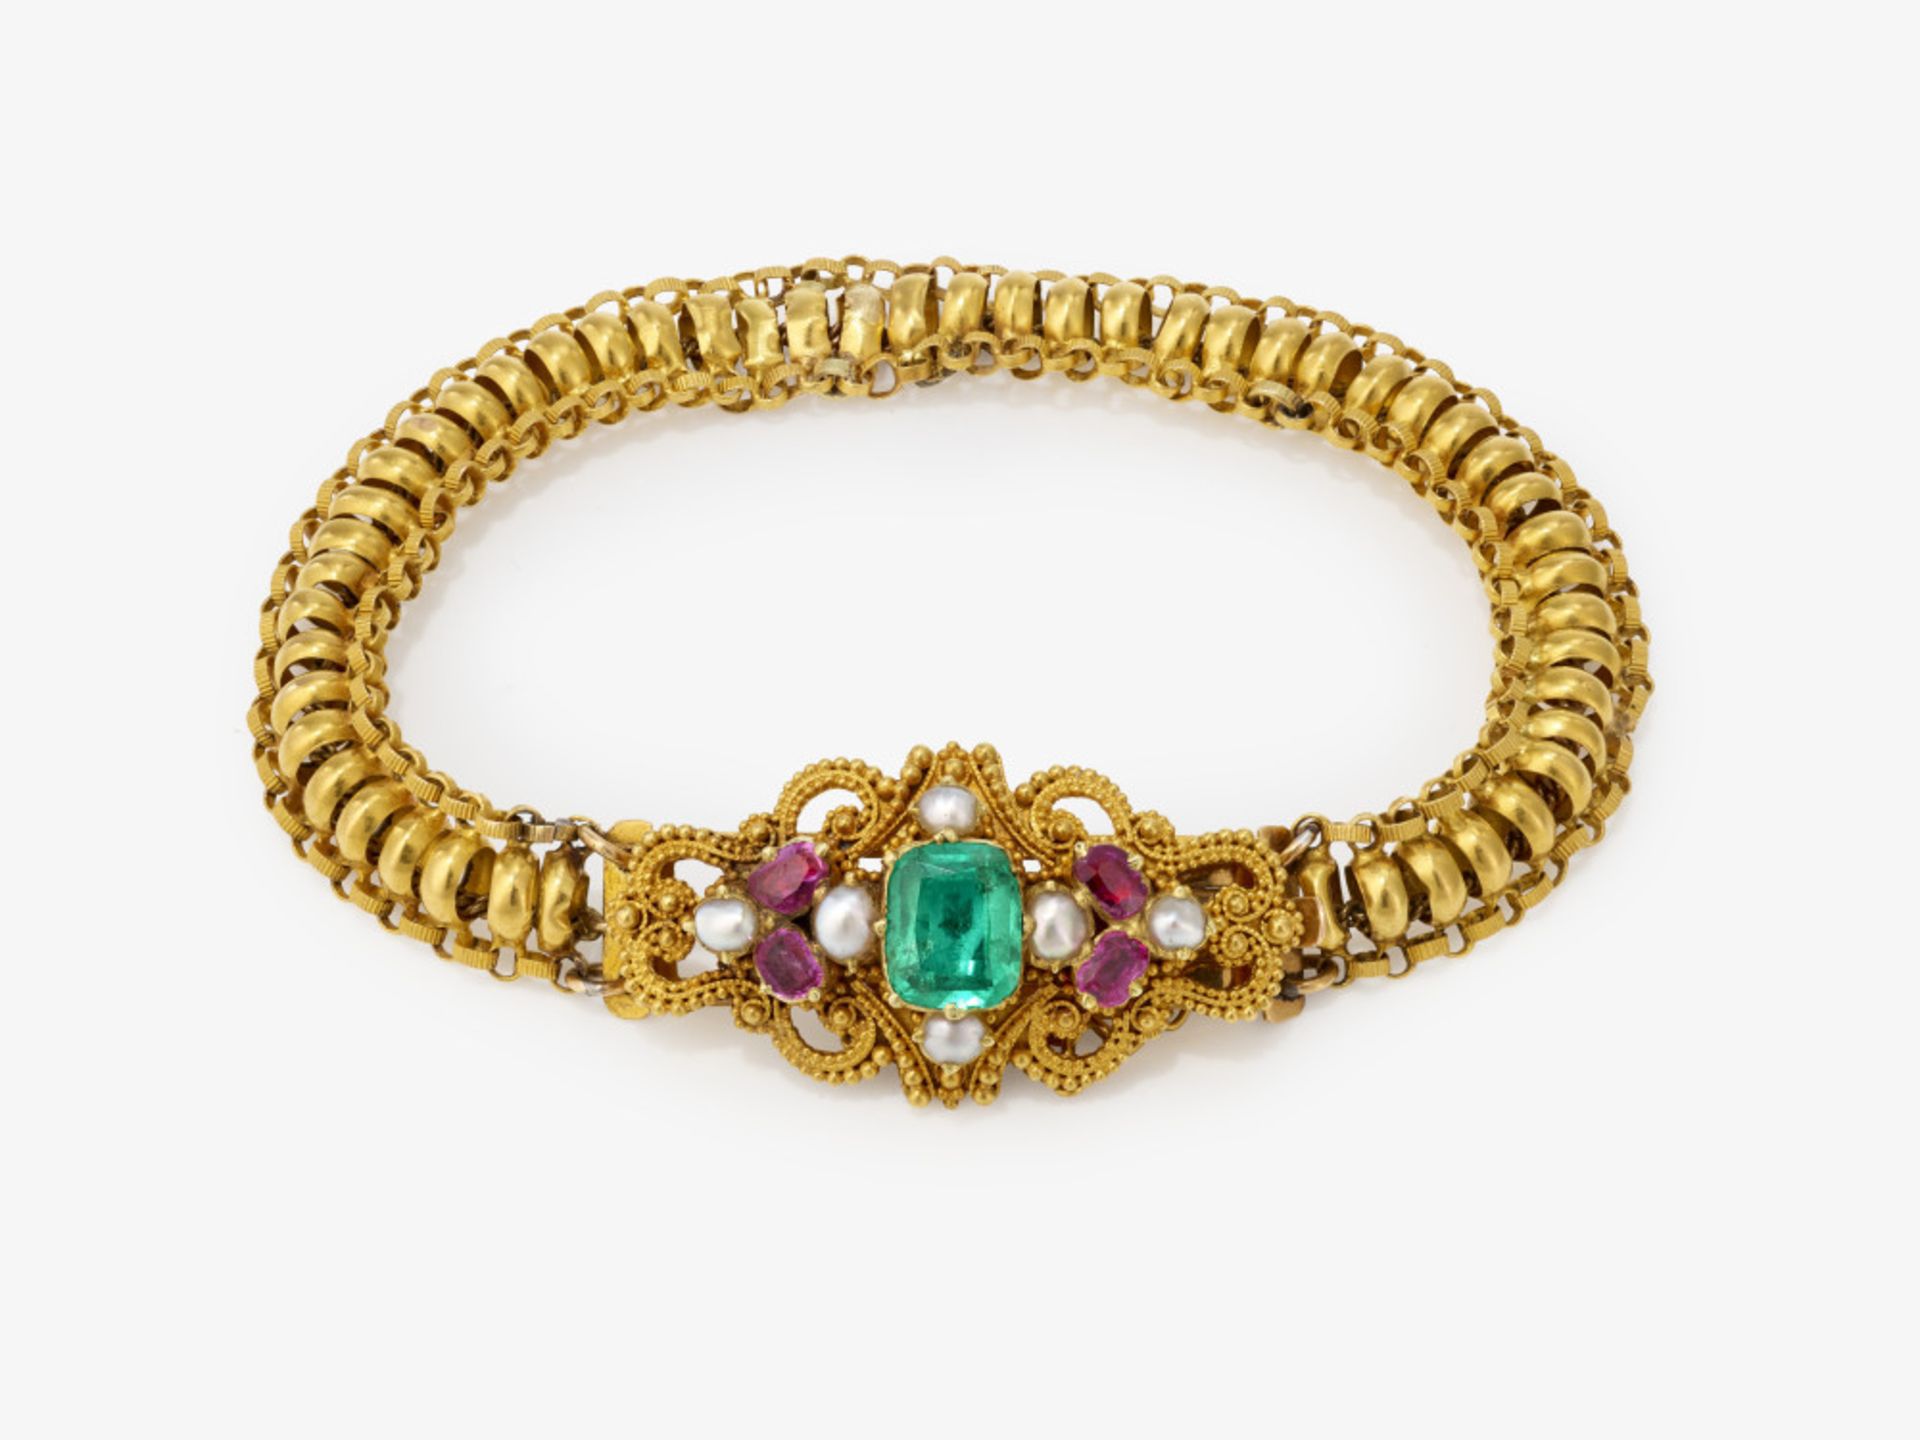 Armband mit schönem Smaragd, Rubinen und Perlen - Wohl Frankreich, um 1830